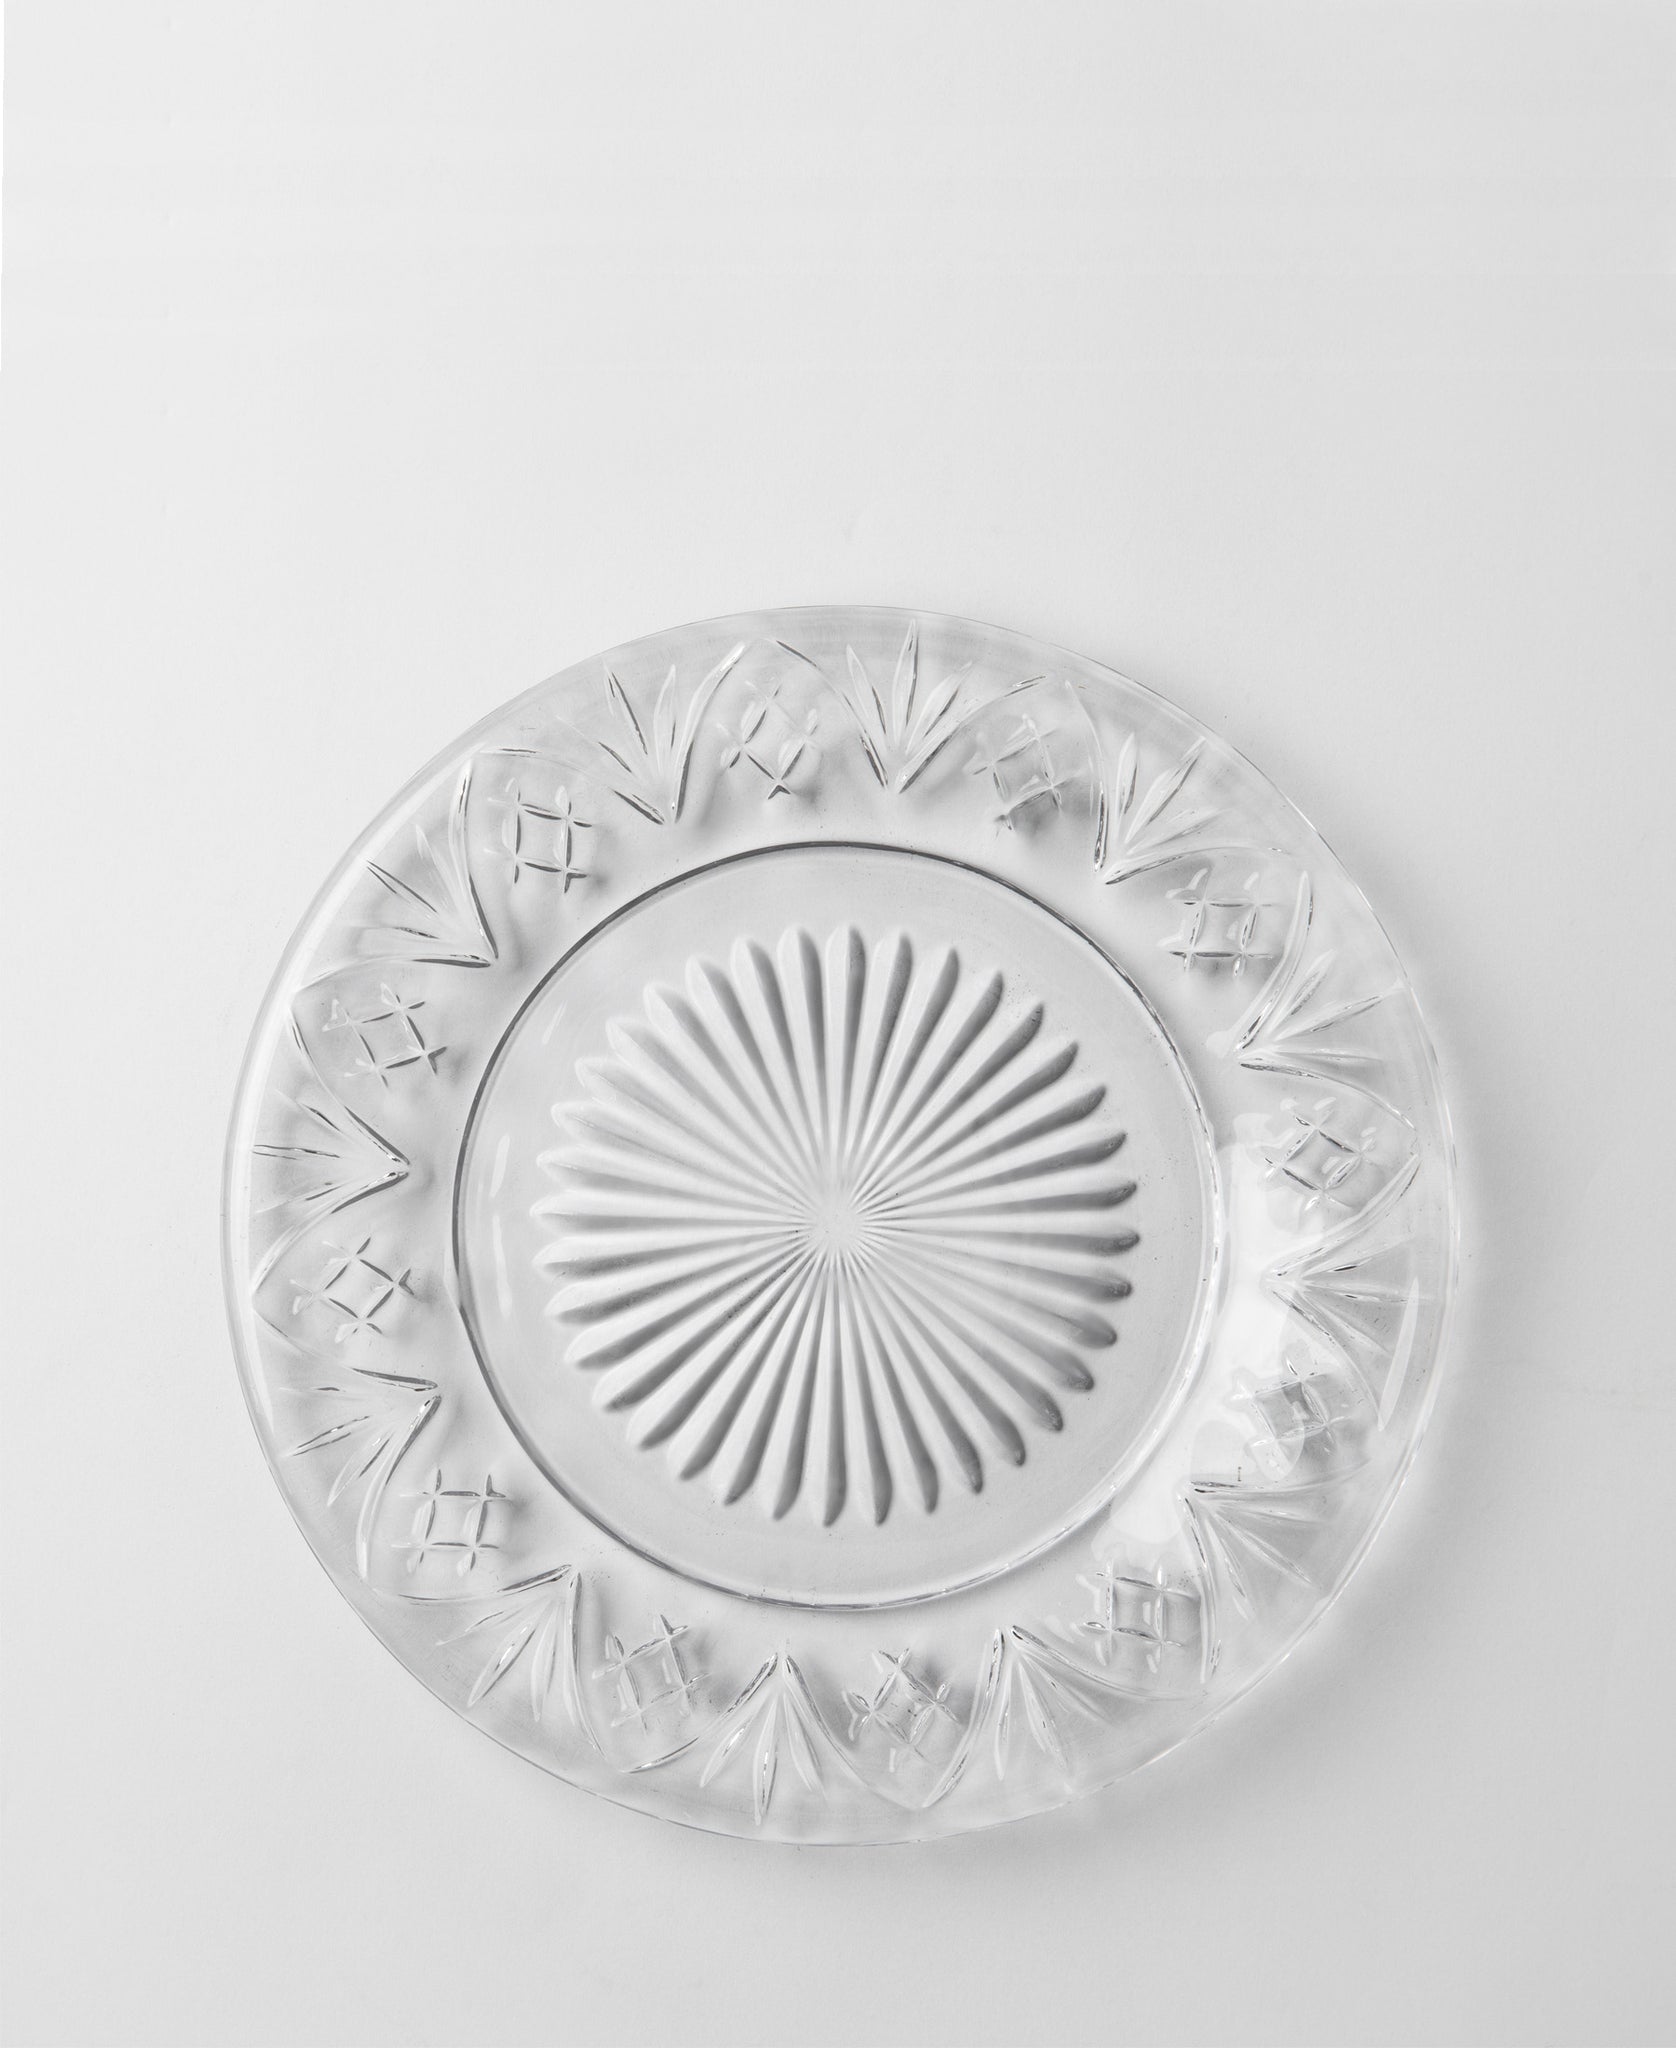 Paris Collection 4 Piece Side Plates - Transparent